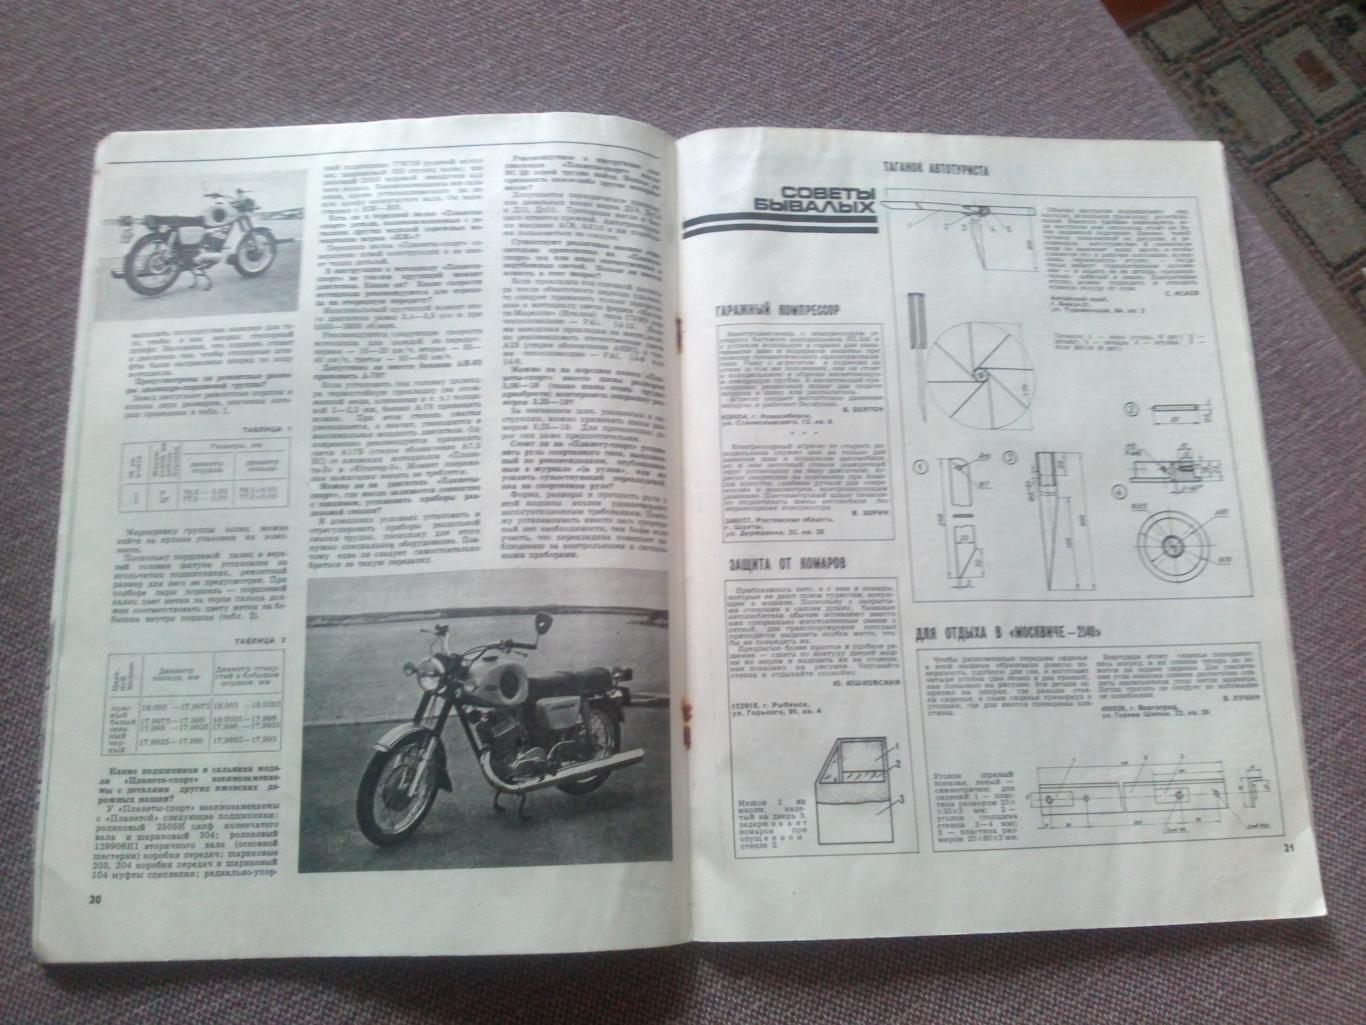 Журнал СССР :За рулем№ 6 ( июнь ) 1978 г. ( Автомобиль , транспорт ) 4